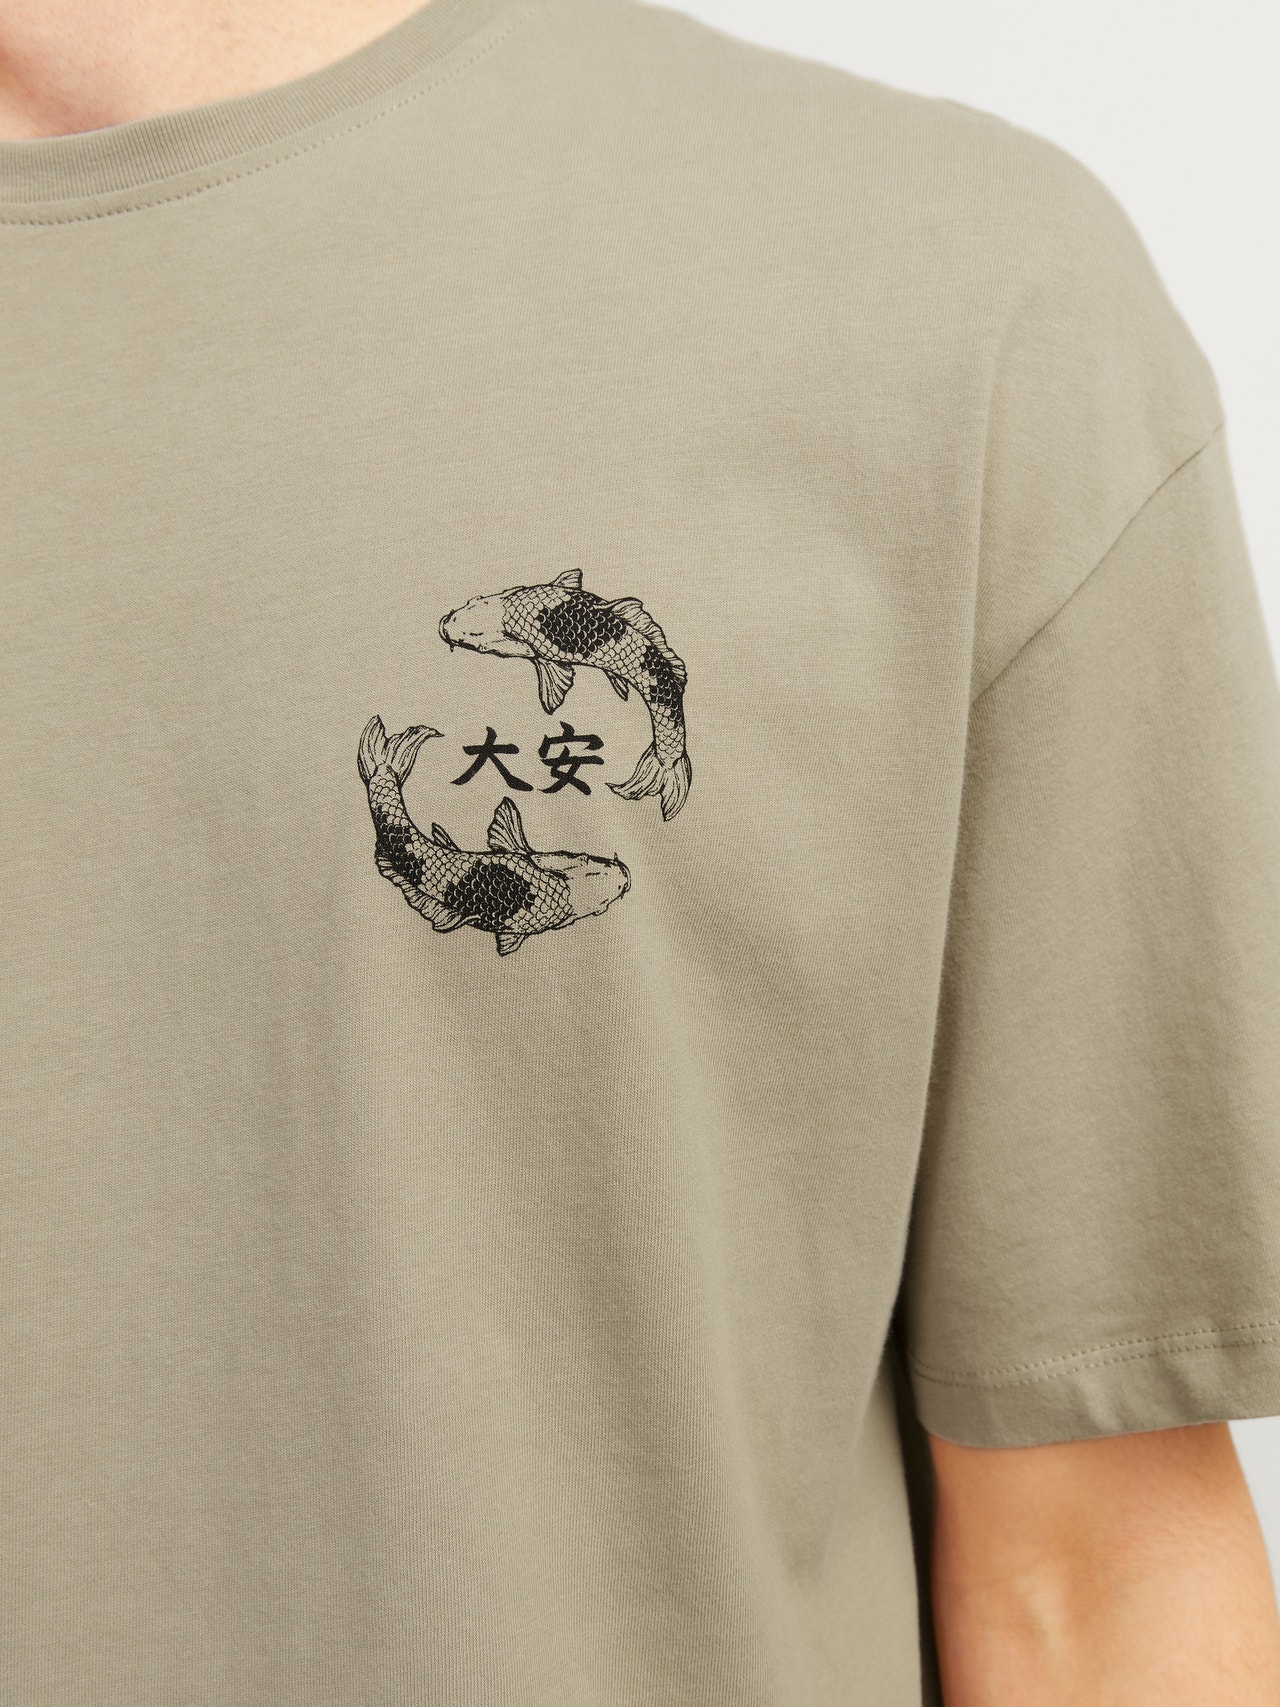 Jack & Jones Printet Crew neck T-shirt -Crockery - 12267274